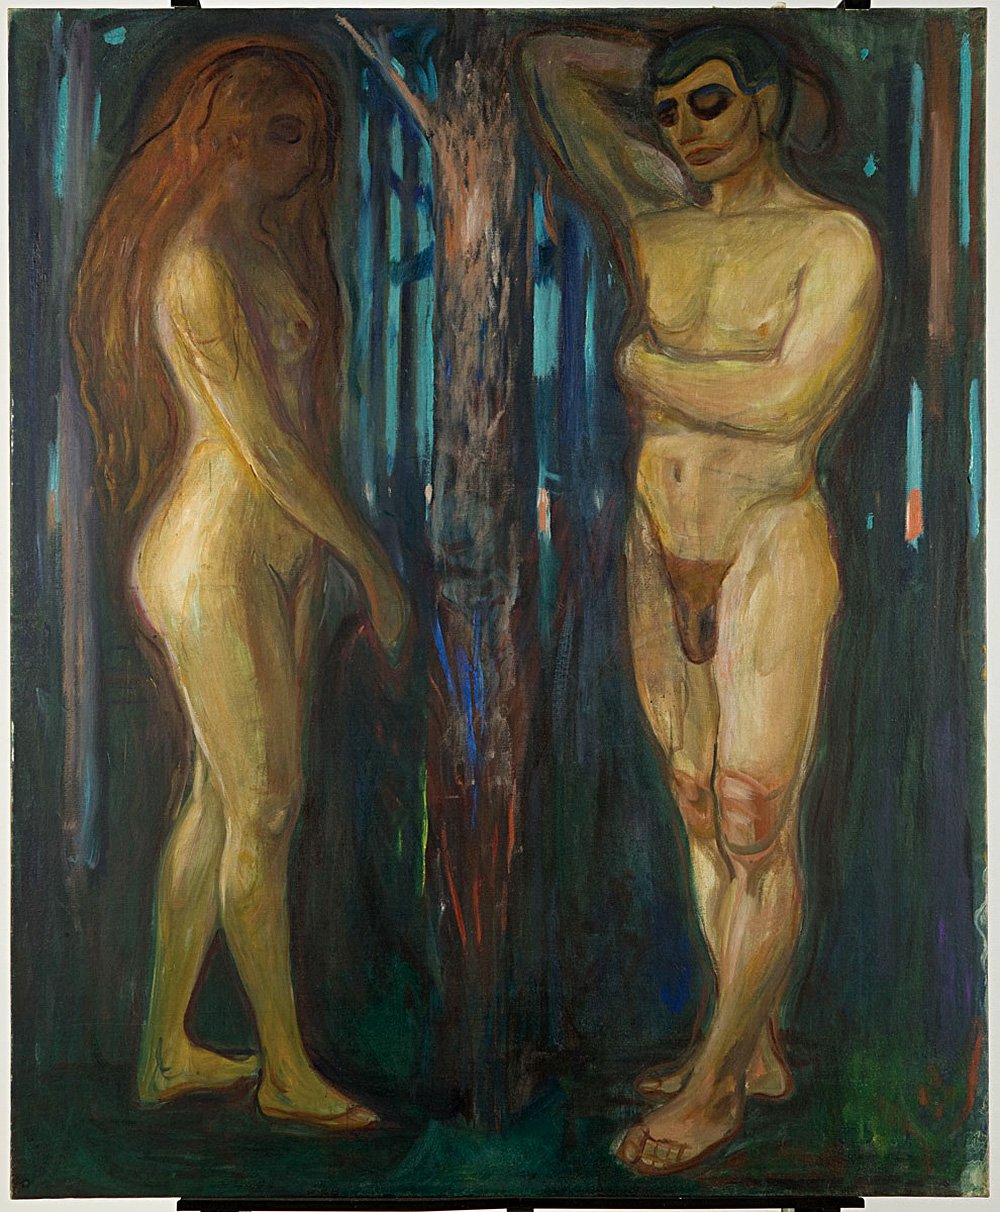 Эдвард Мунк. «Метаболизм. Жизнь и смерть». 1898–1899. Холст, масло. Музей Мунка (Осло, Норвегия)